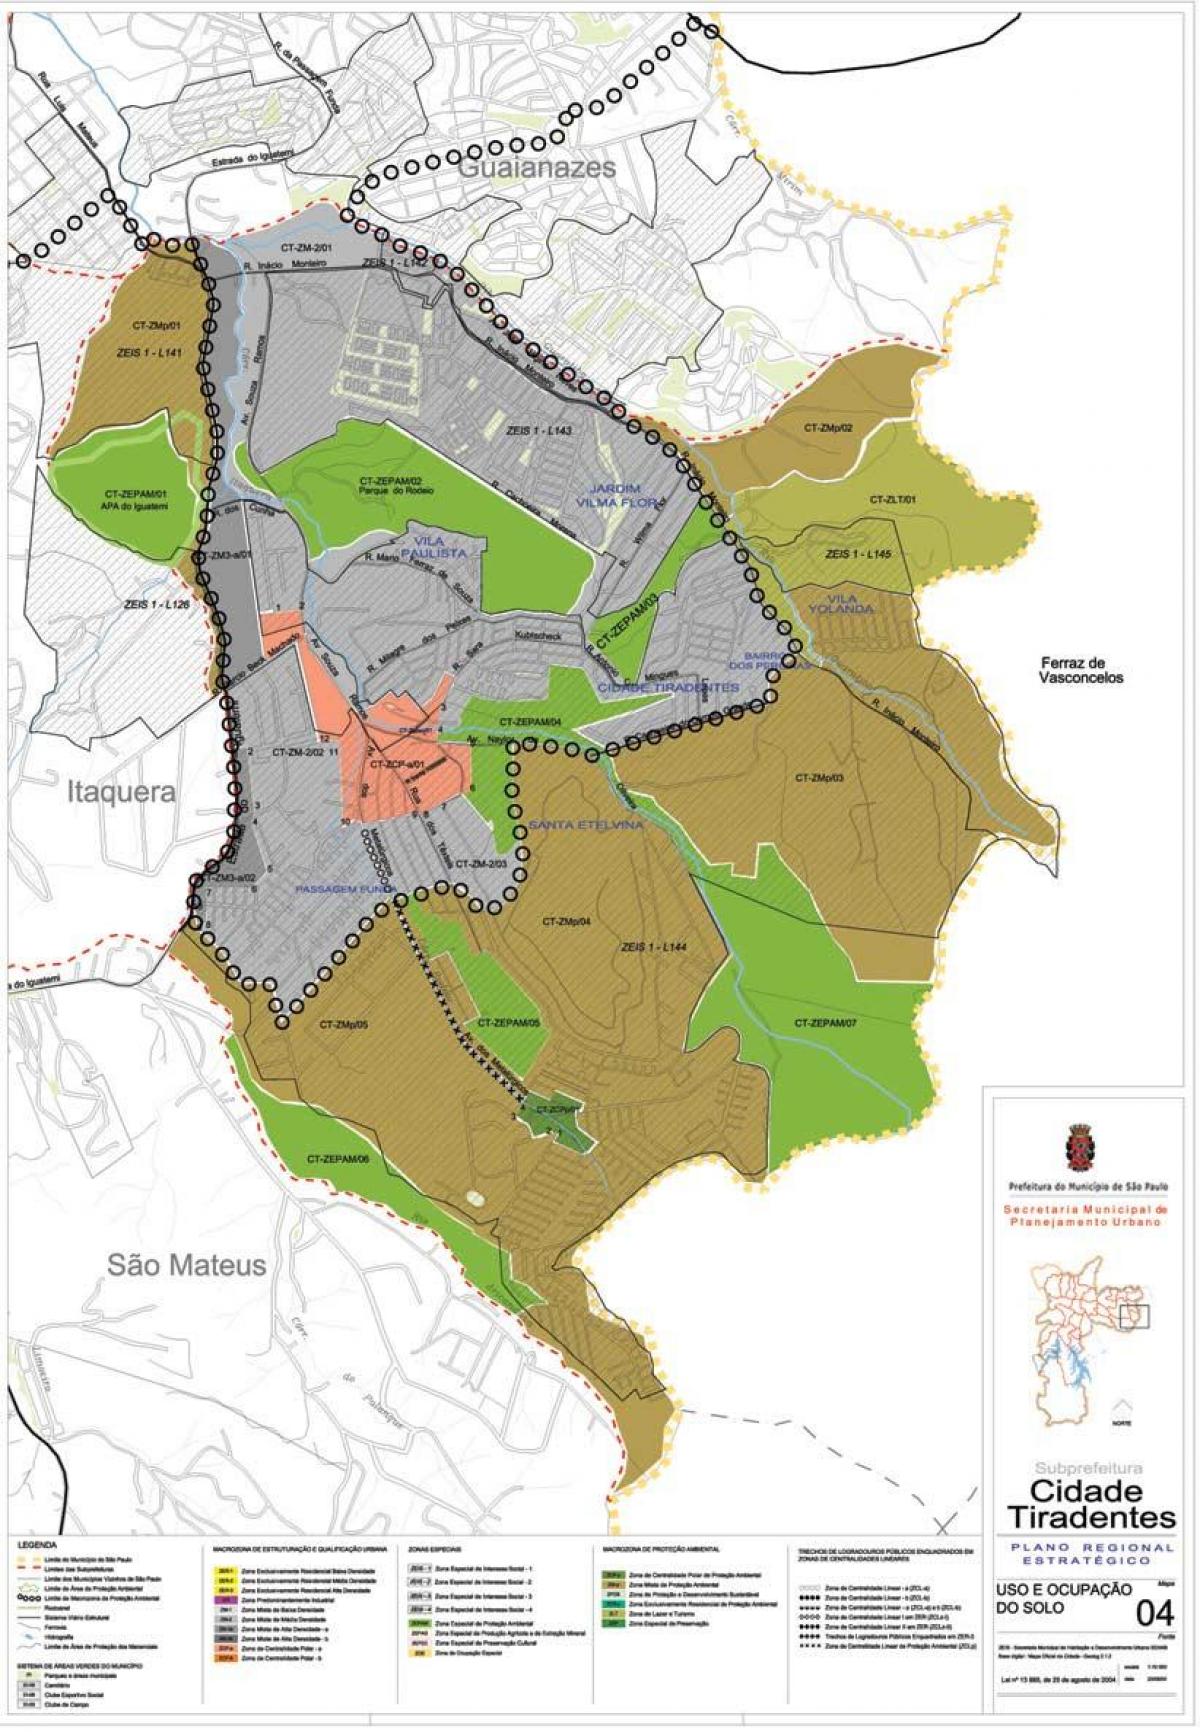 Mapa Cidade Tiradentes Sao Paulo - Okupacija tlu